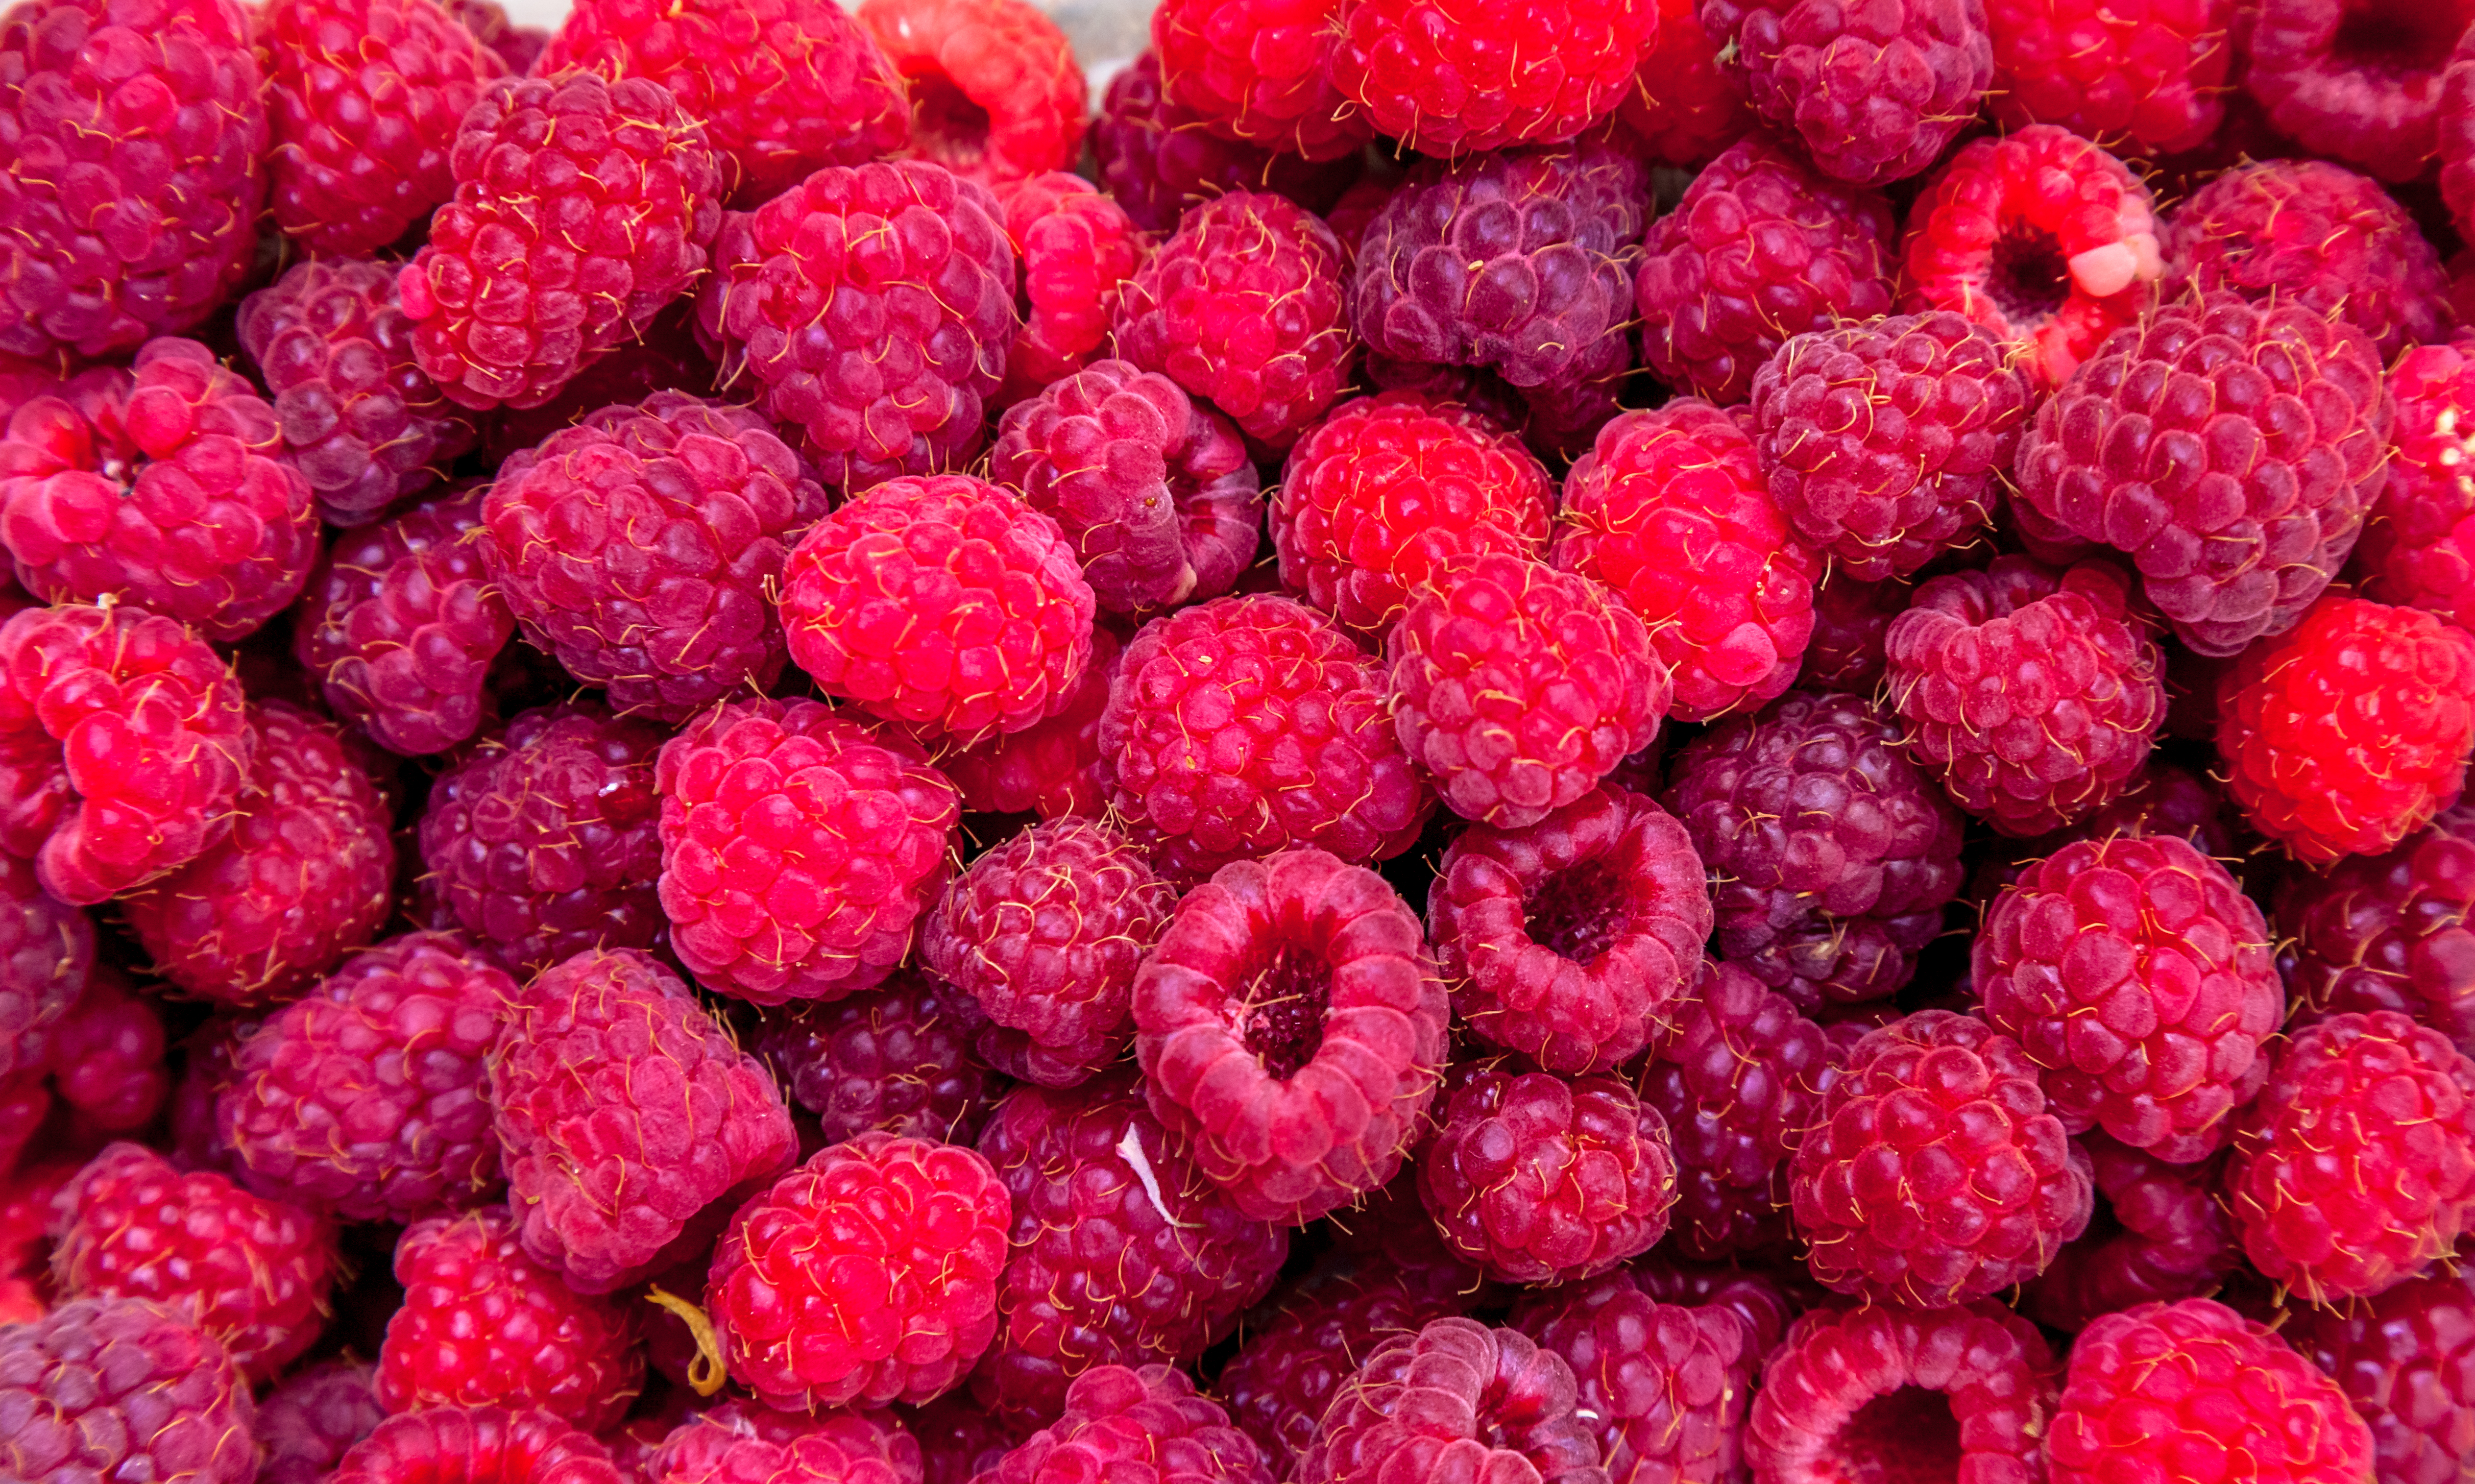 Raspberries 2021 08 26 16 29 34 utc 1 scaled